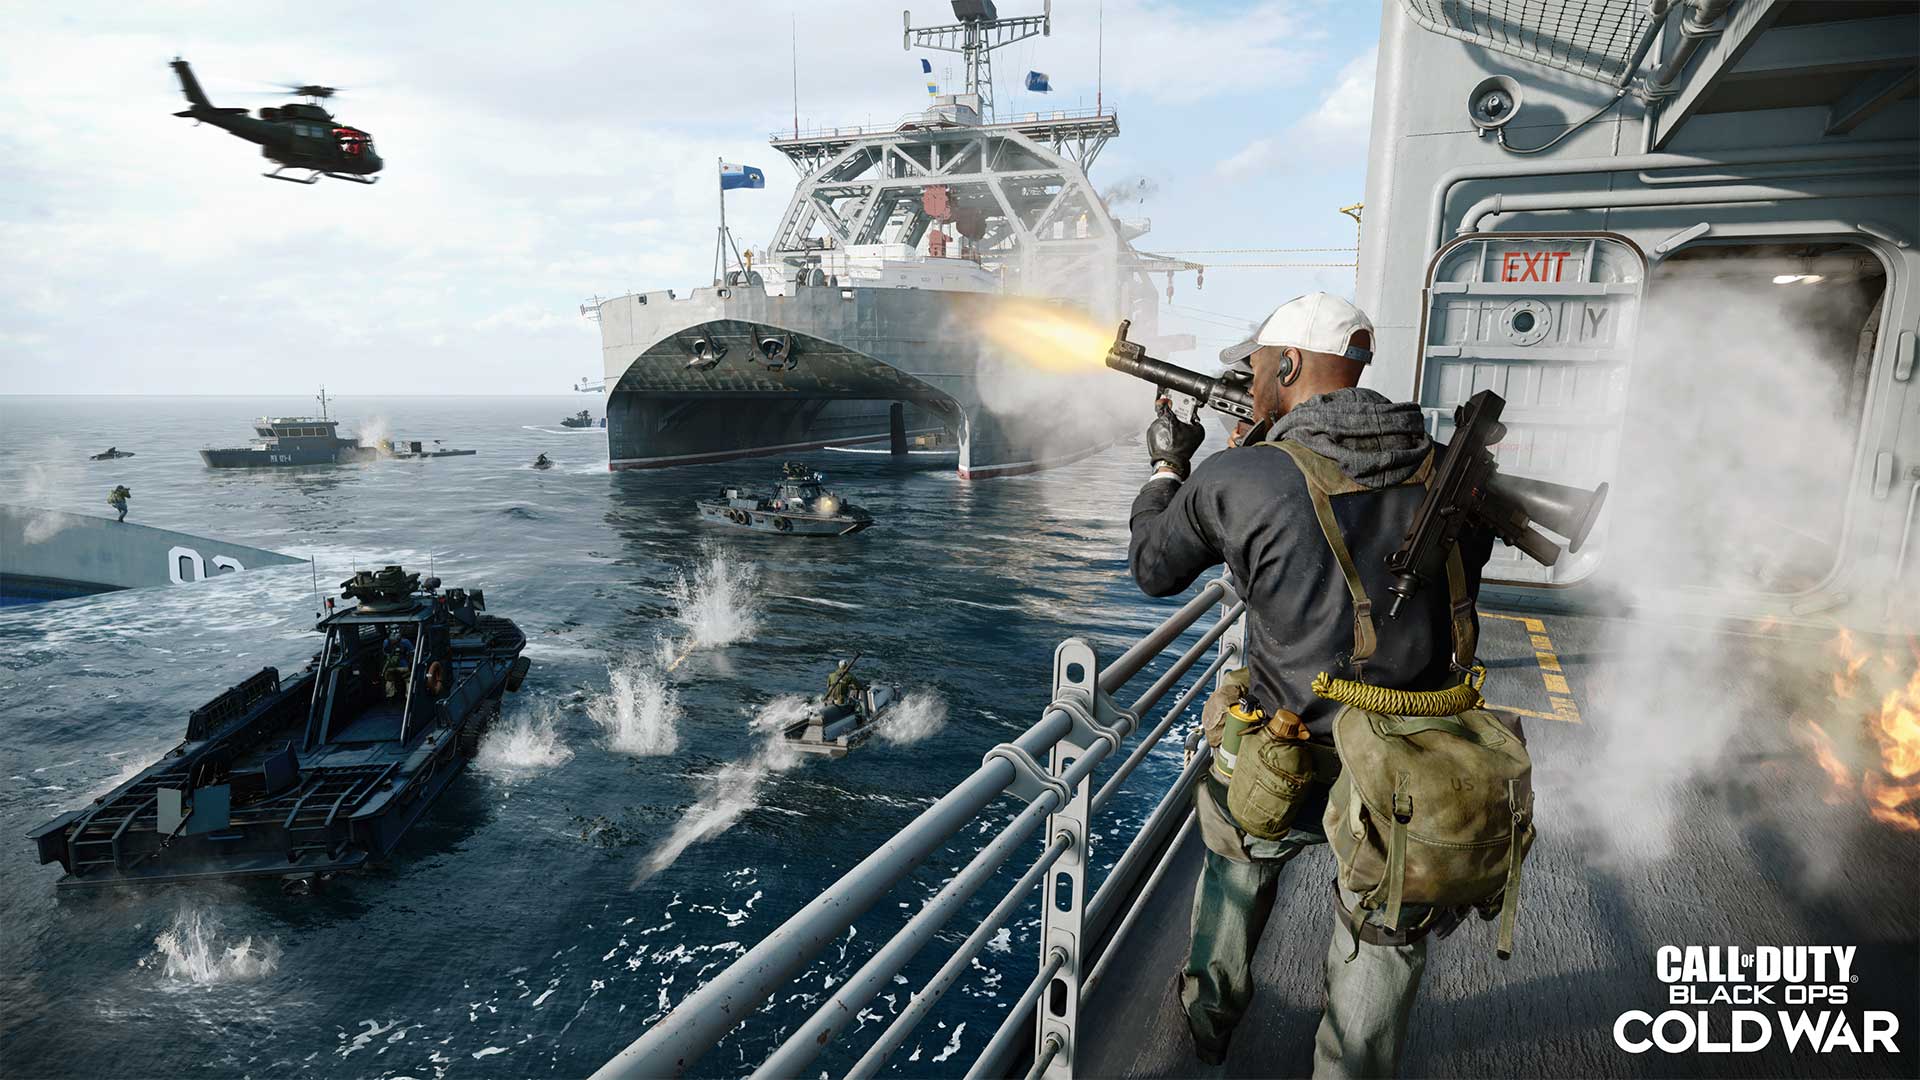 Aquí están los requisitos del sistema Call of Duty: Black Cops Cold War y los detalles de la beta abierta